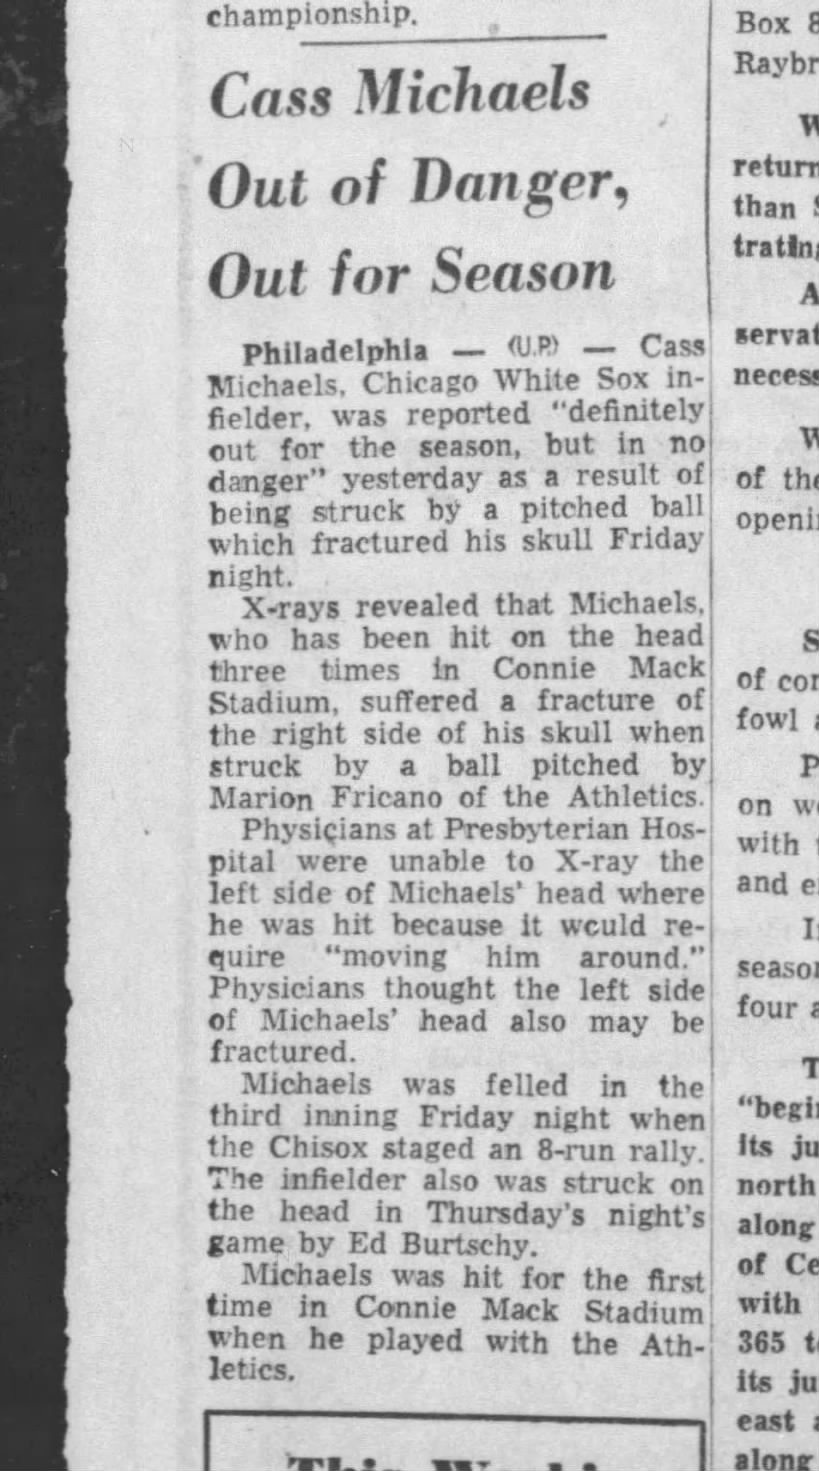 Cass Michaels, August 29, 1954